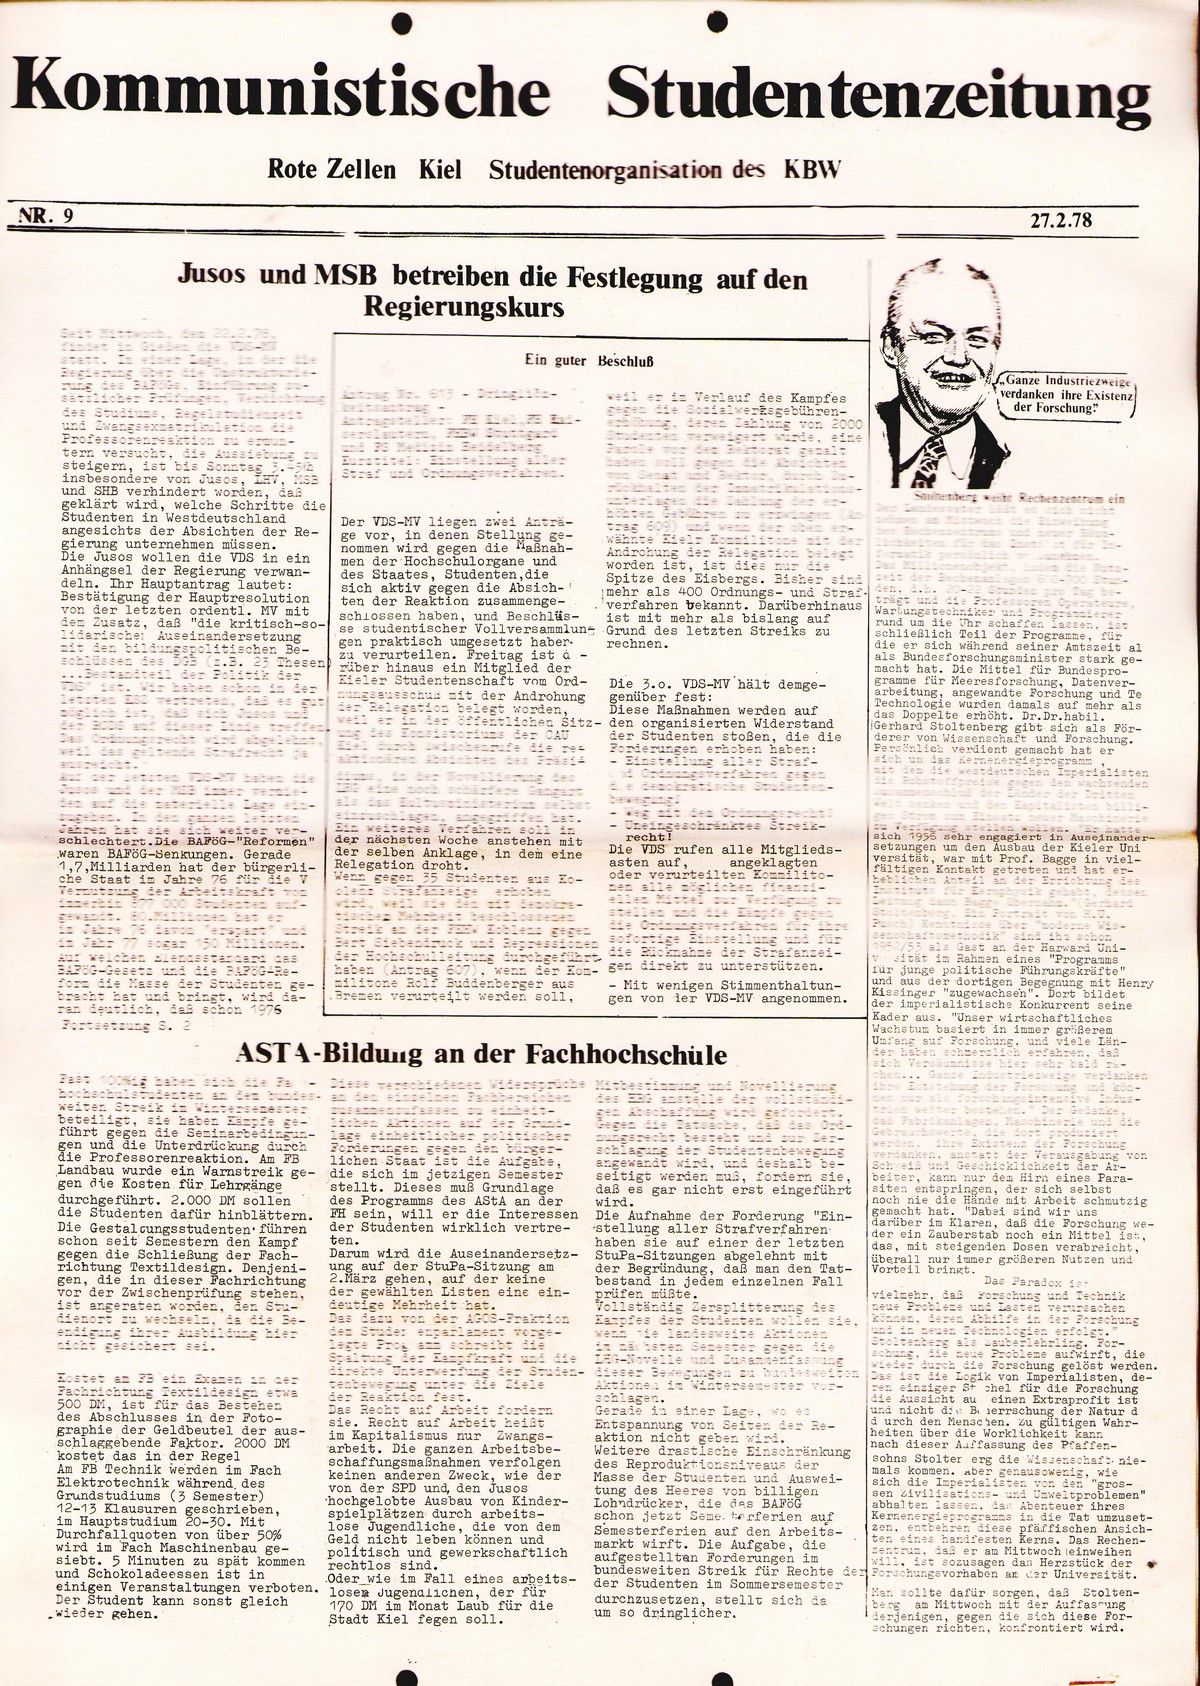 Kiel_VDS_RZ_Kommunistische_Studentenzeitung_19780227_001